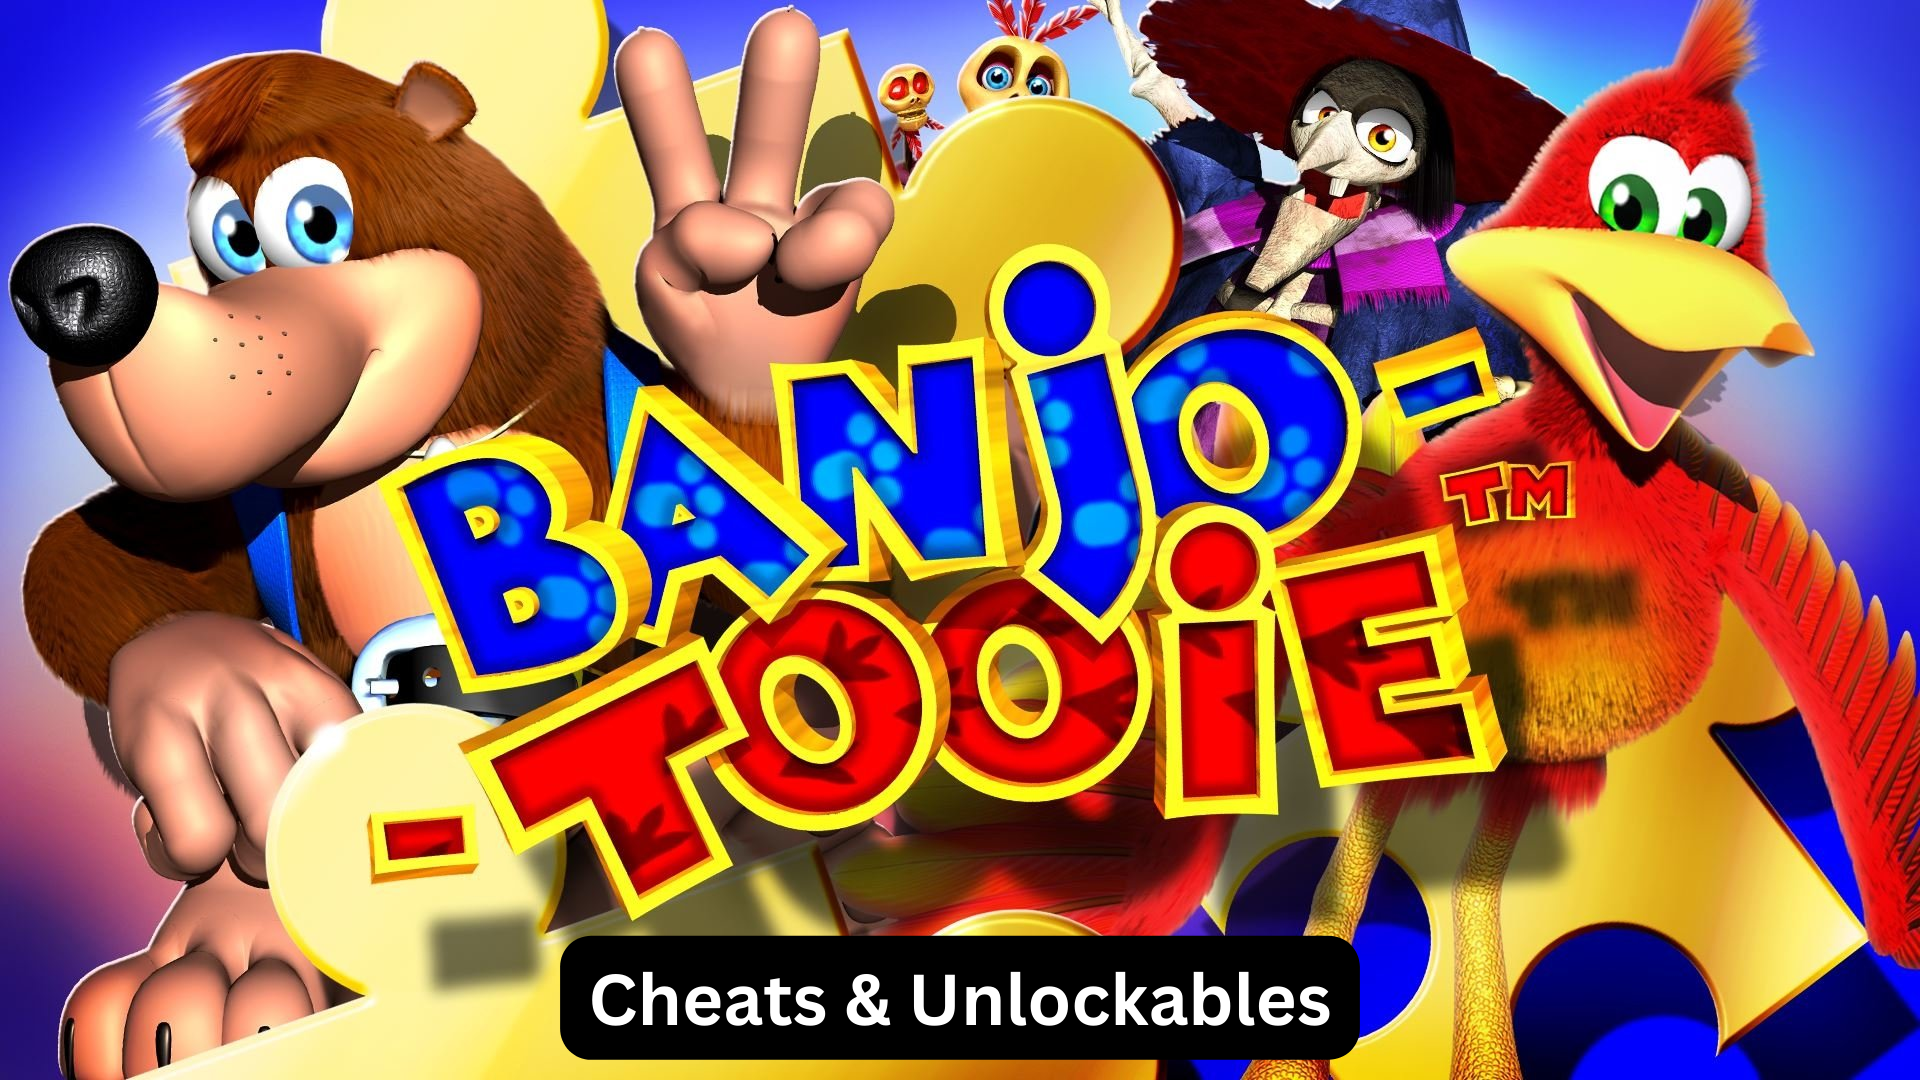 banjo-tooie cheats and unlockables